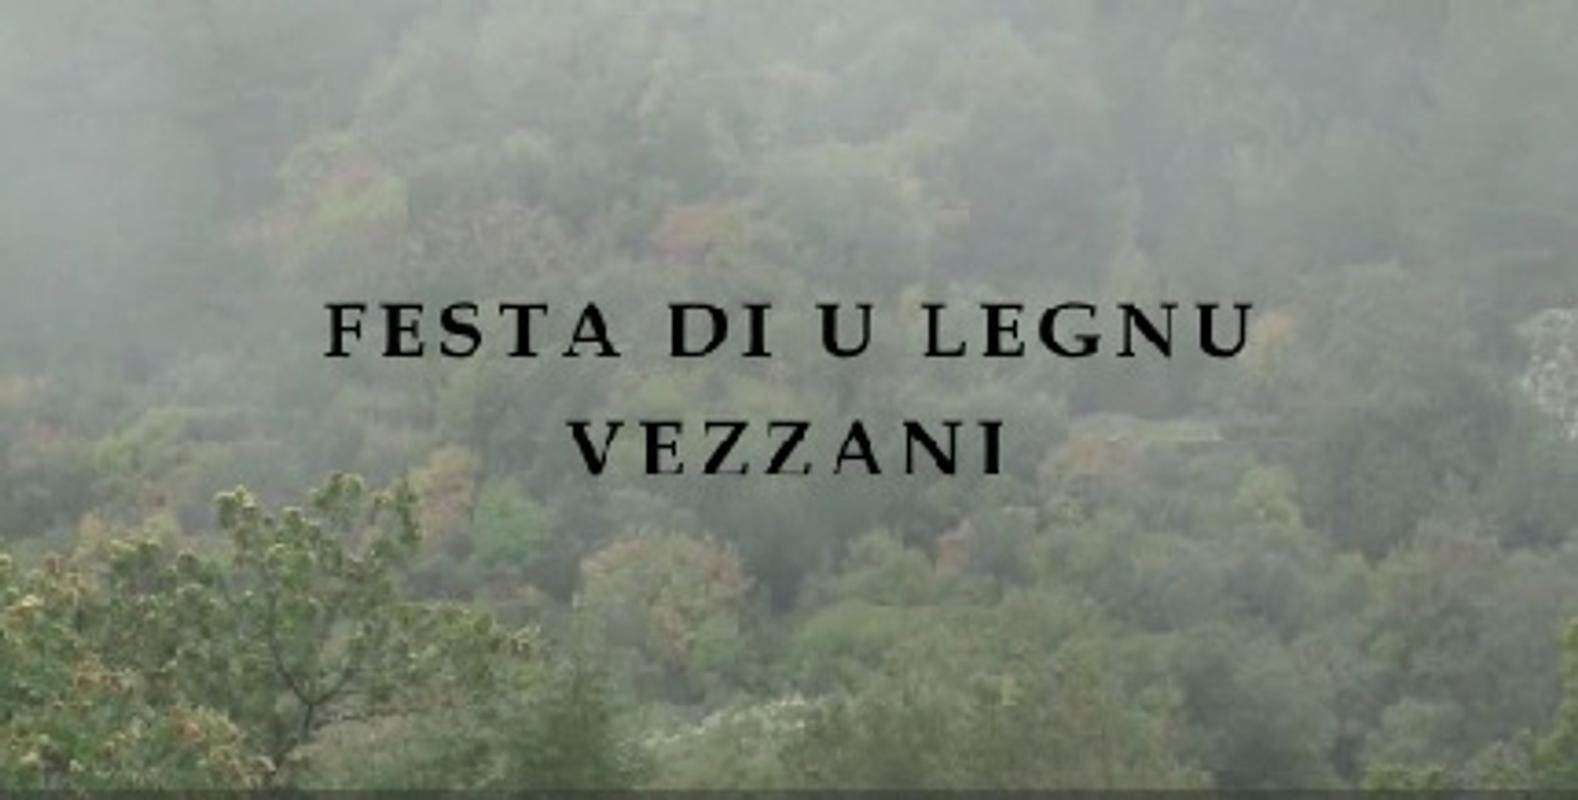 >Festa di u legnu è di a furesta in Vezzani